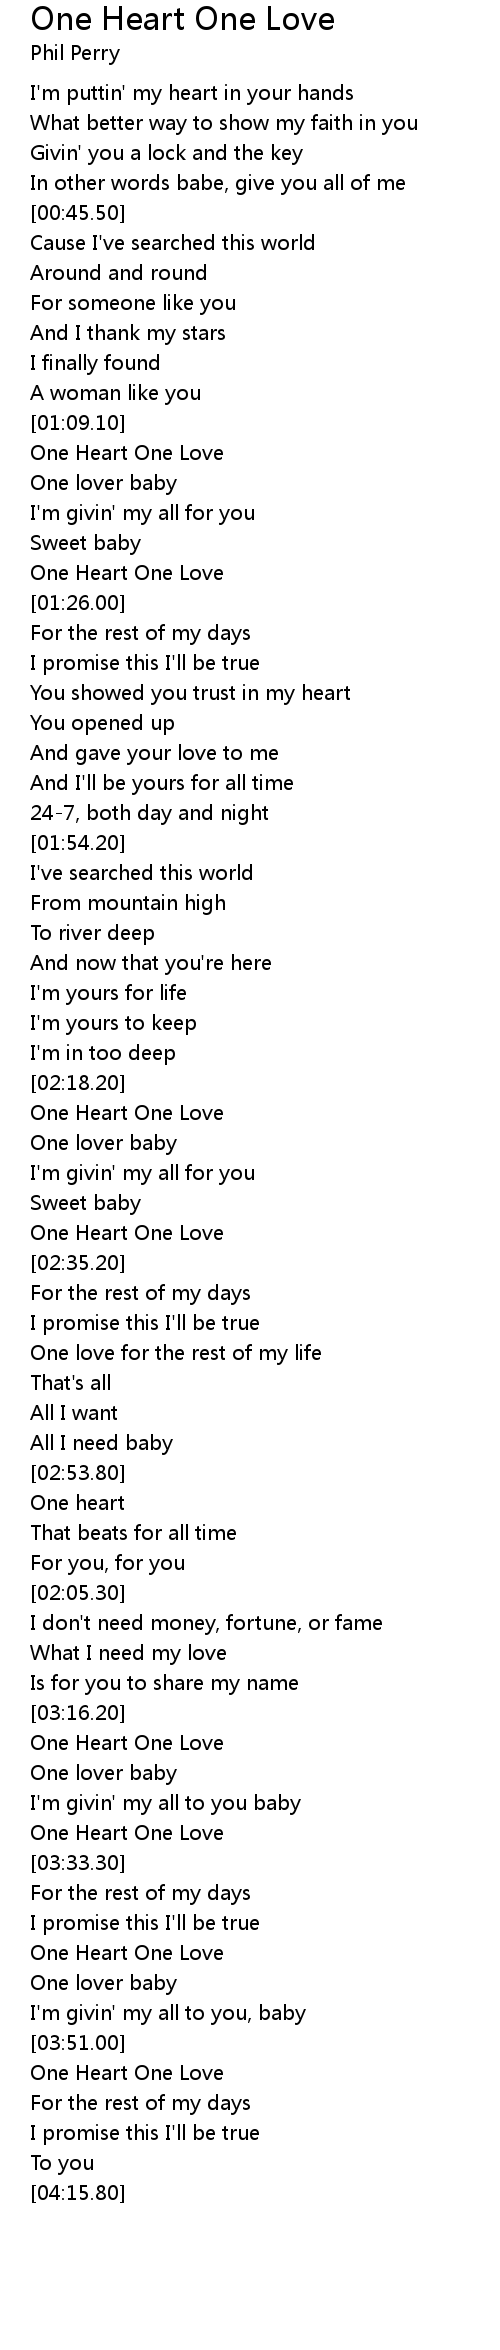 One Heart One Love Lyrics Follow Lyrics